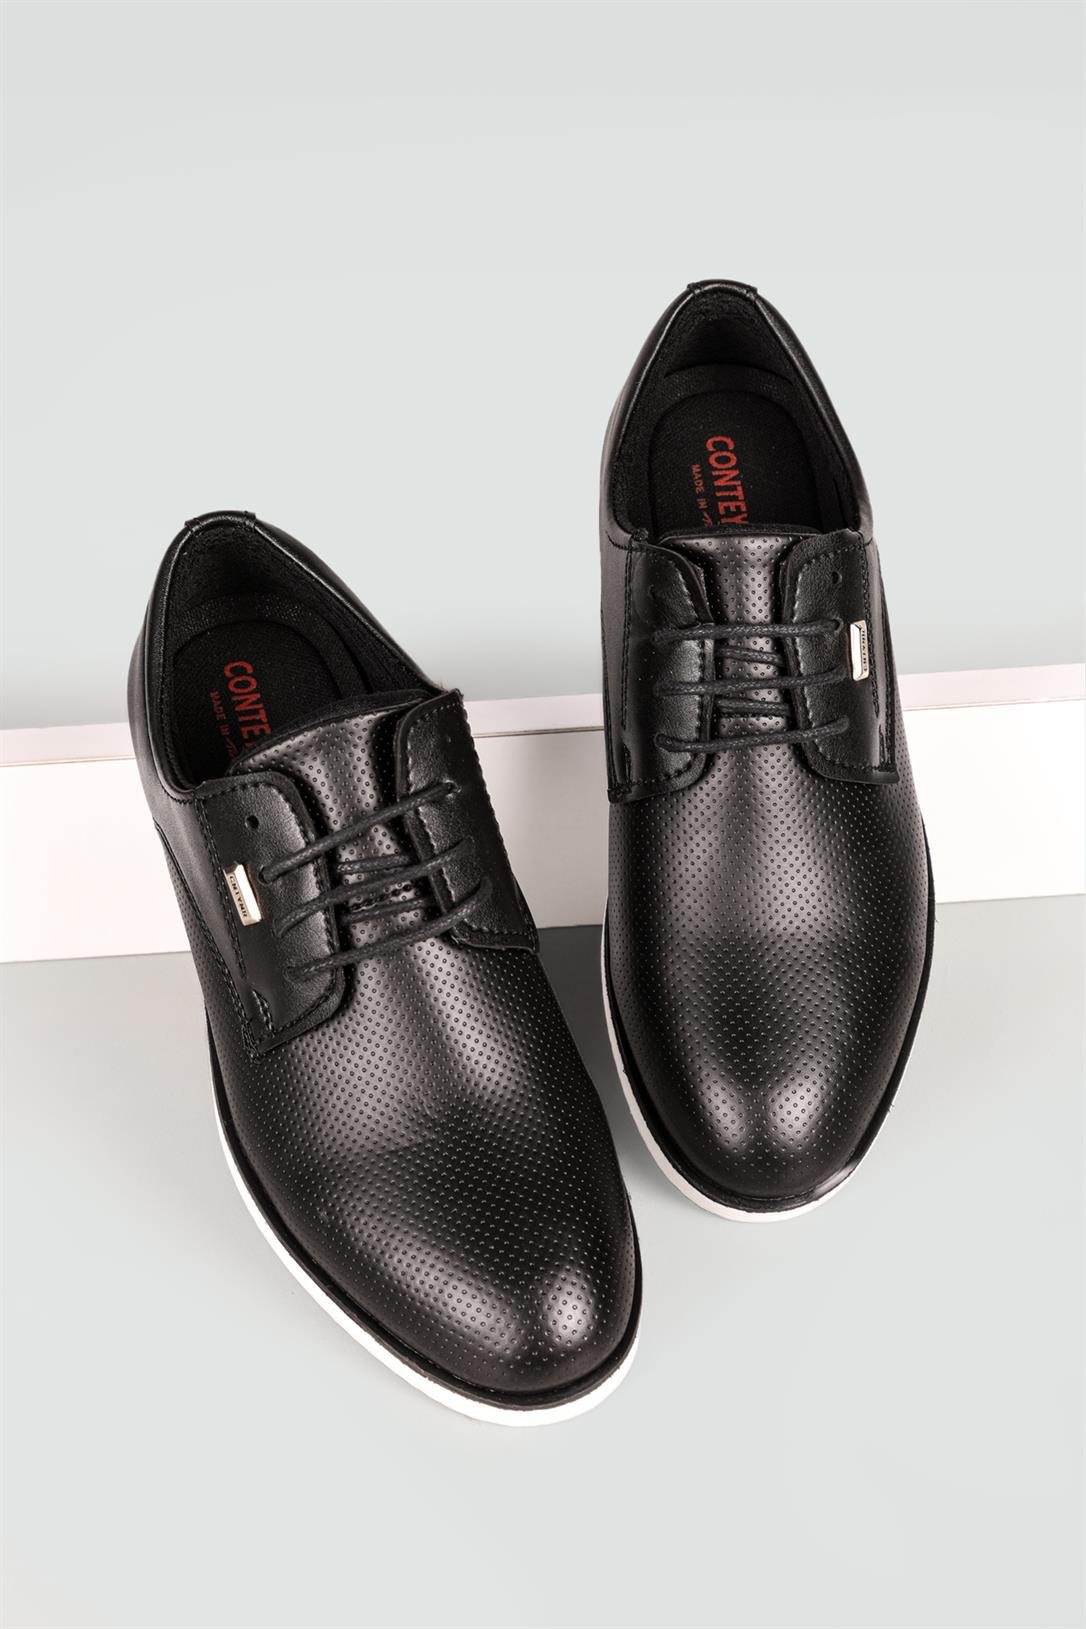 Conteyner Klasik Siyah Baskılı Beyaz Erkek Ayakkabı 681 | Ayakkabı City